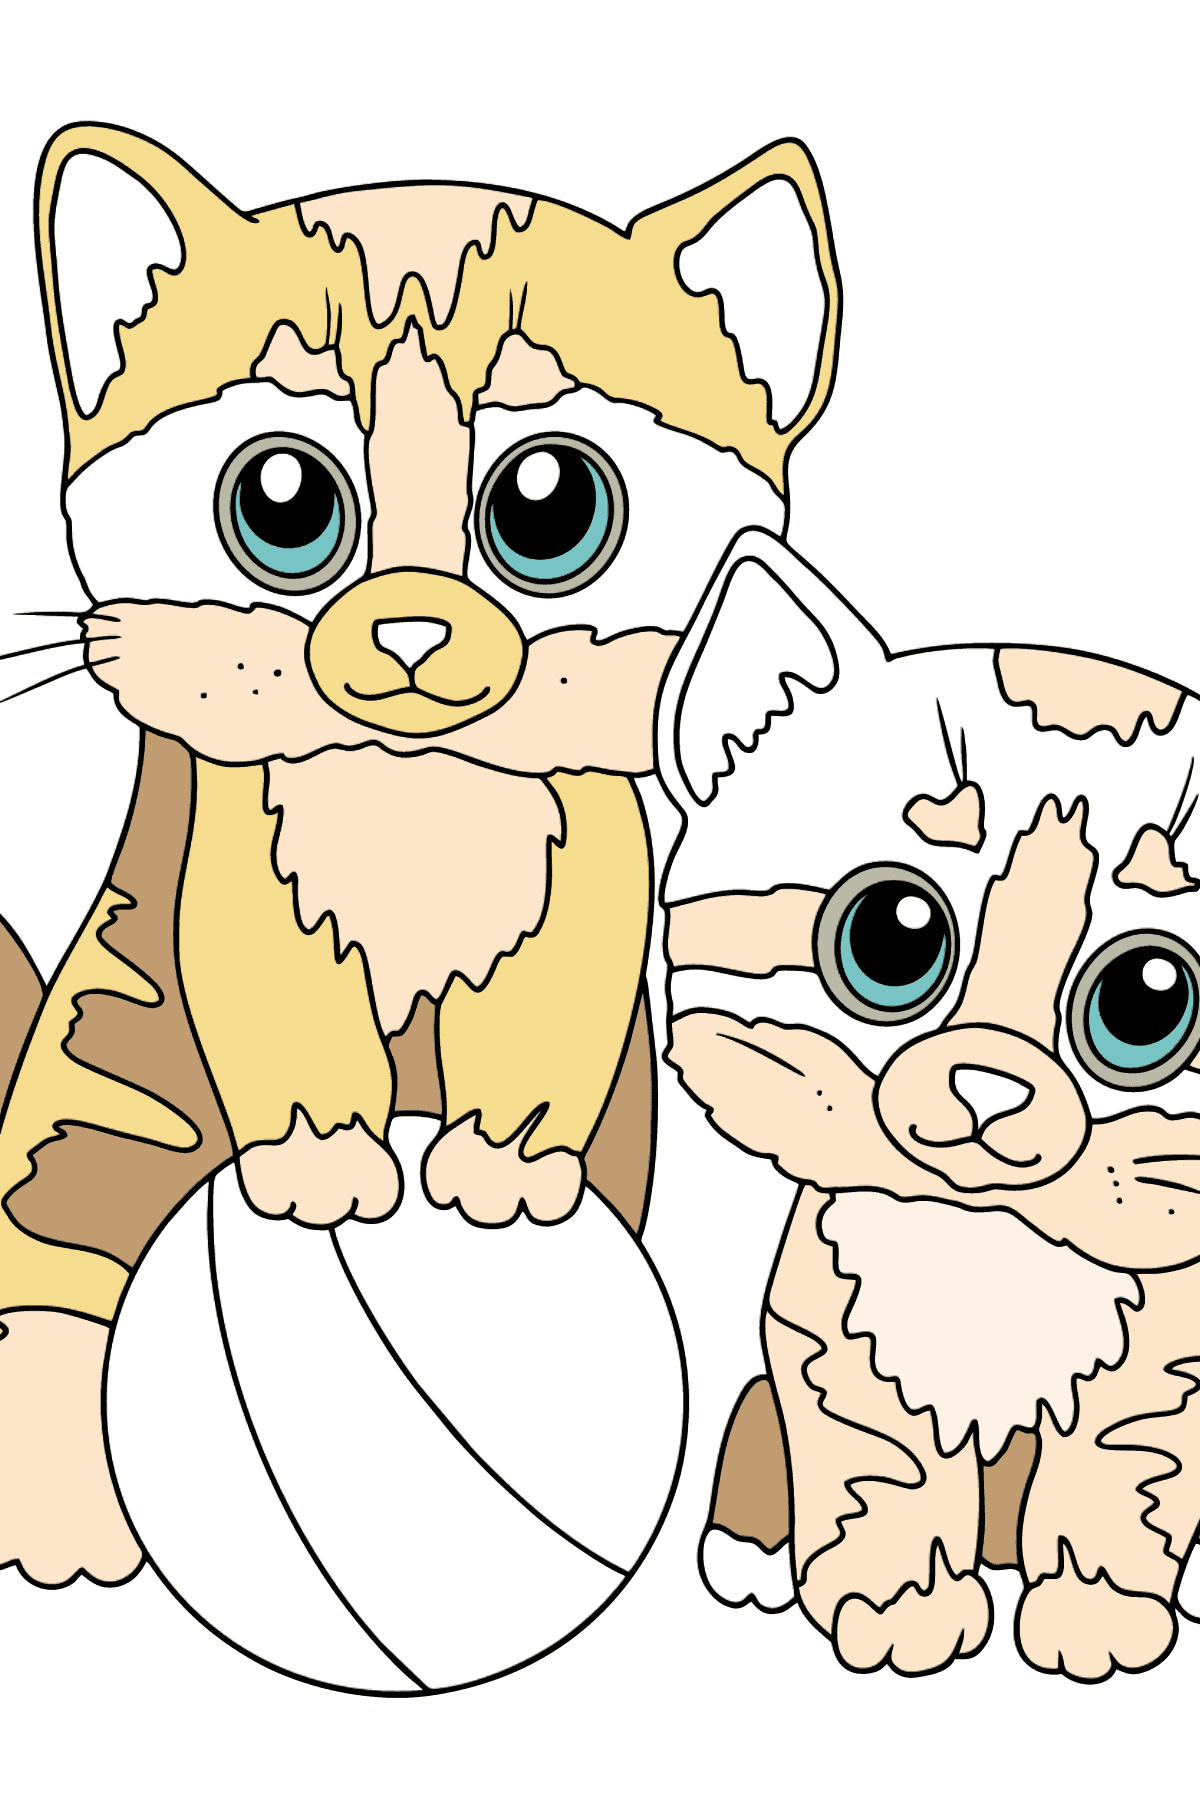 Página para colorear de dos gatitos - Dibujos para Colorear para Niños